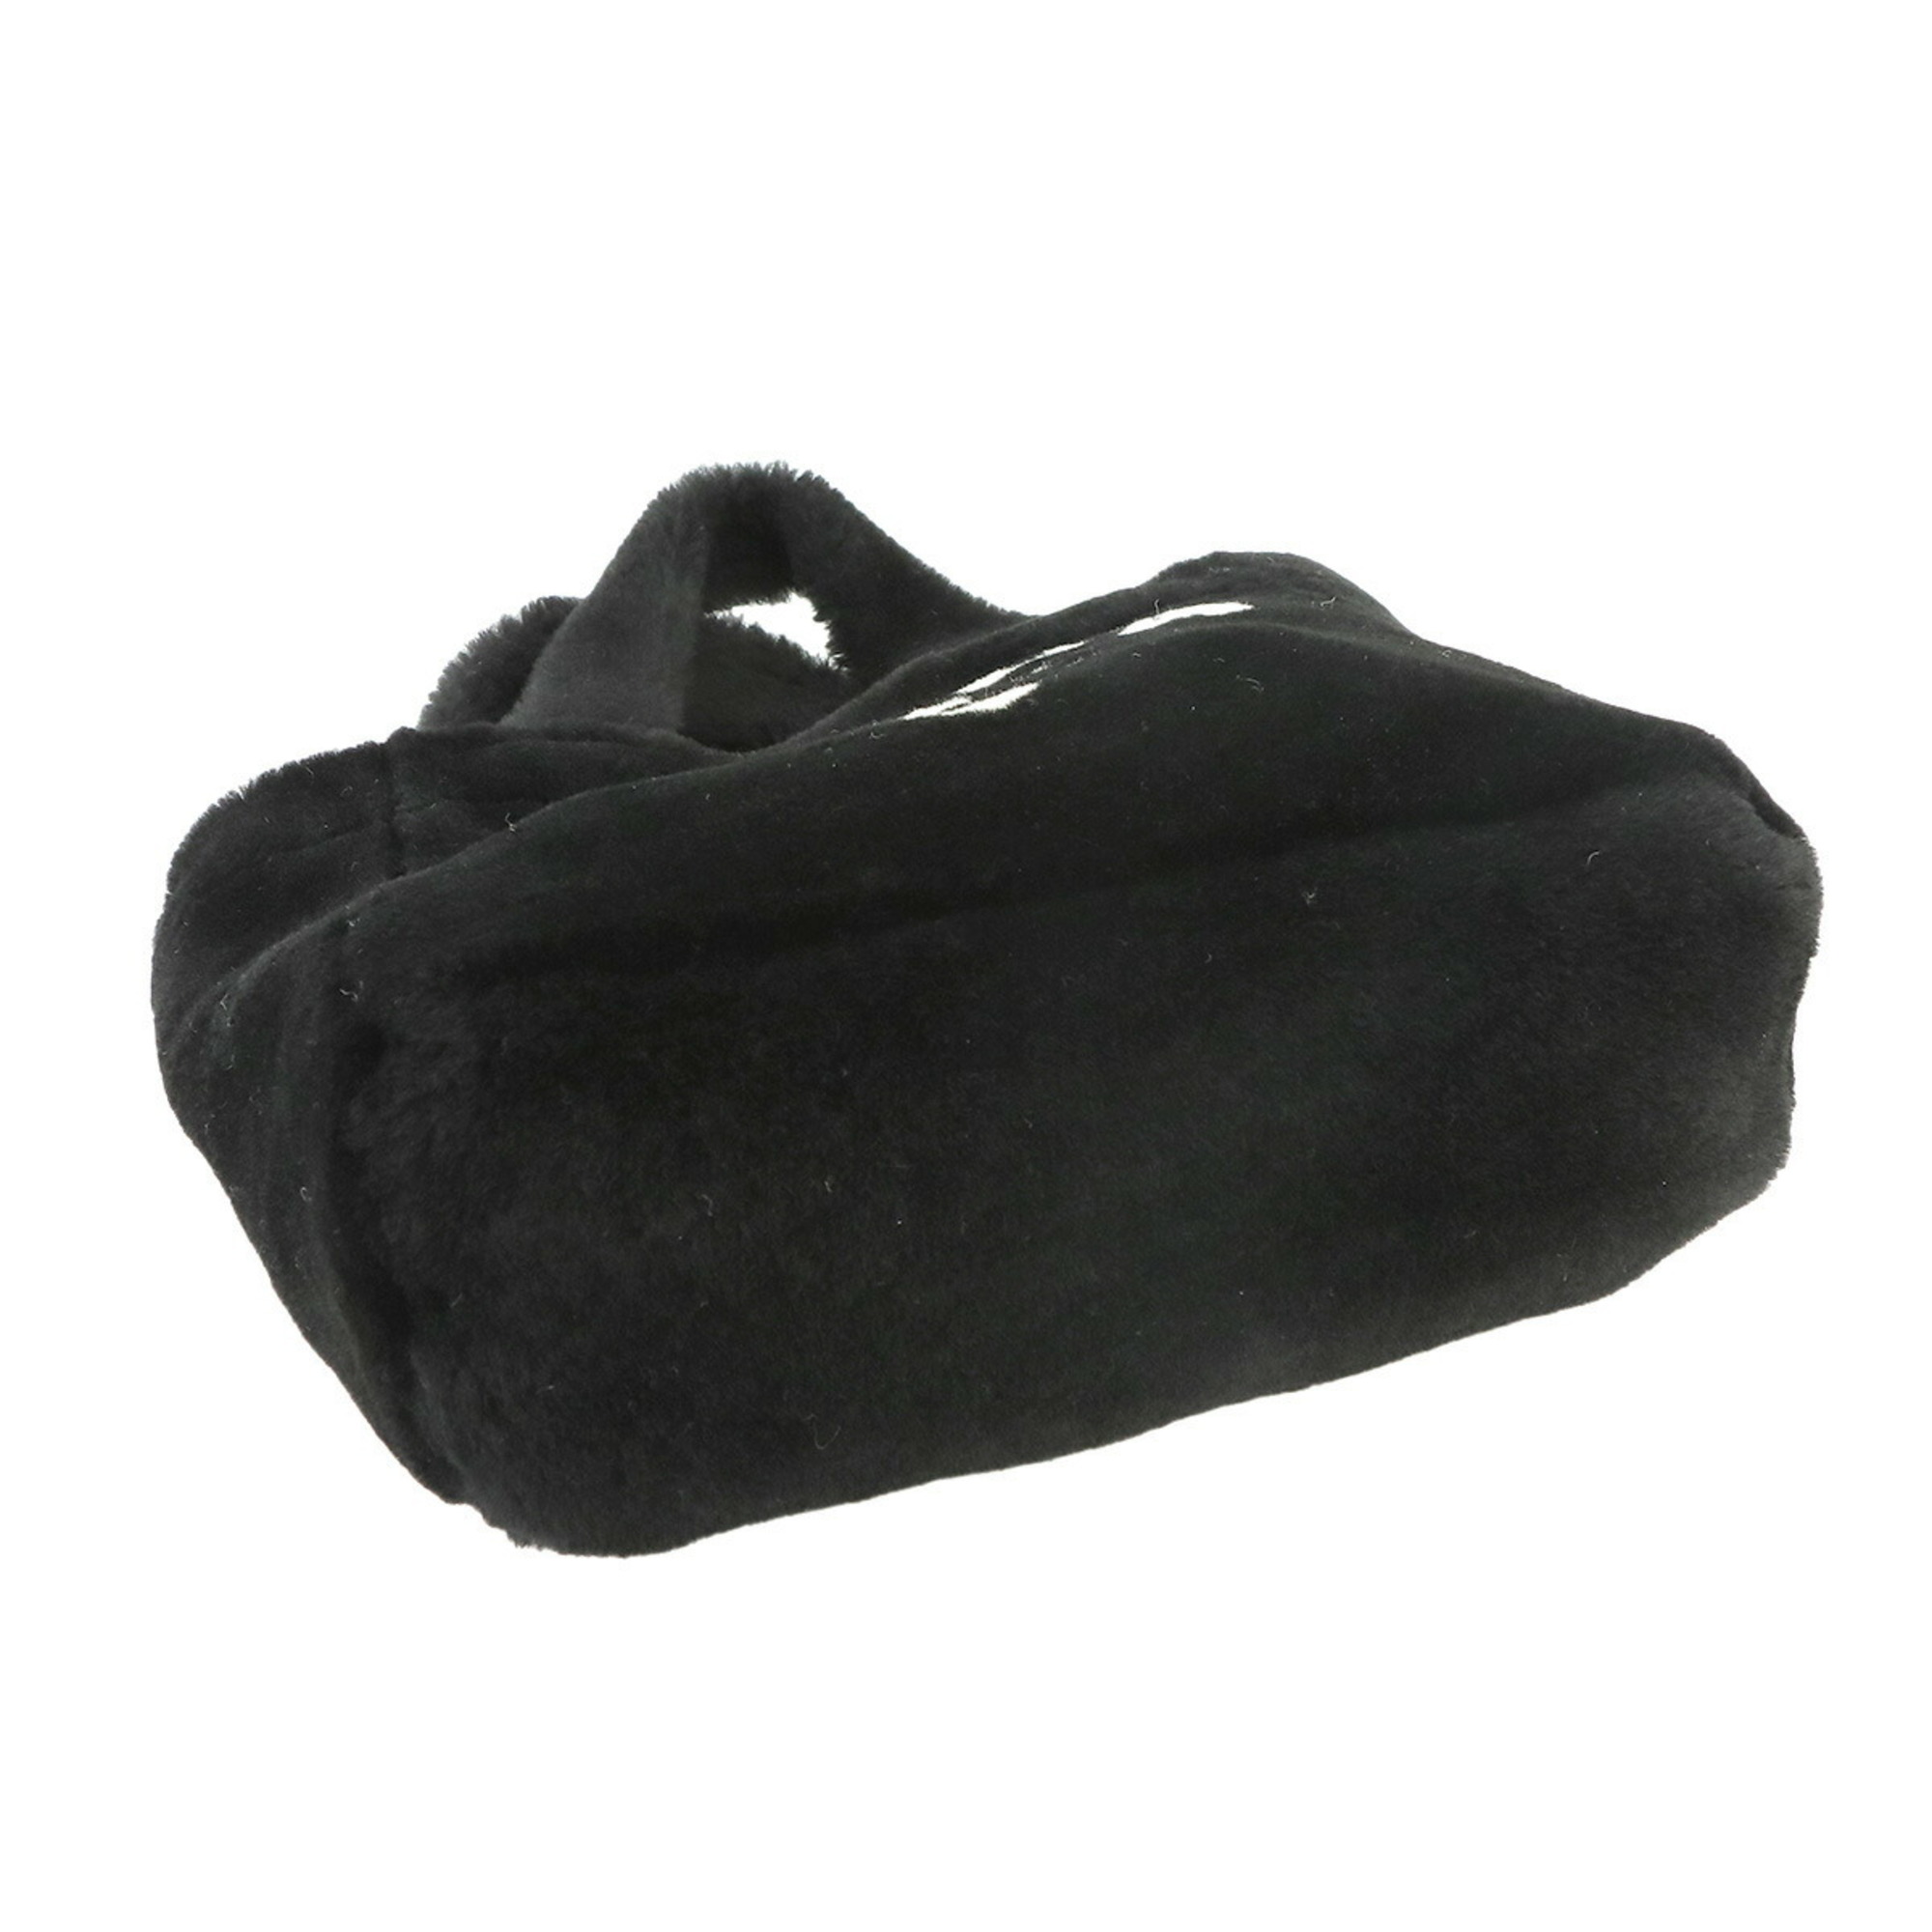 Prada PRADA 2way tote shoulder bag shearling black white 1BG447 gold metal fittings Tote Shoulder Bag